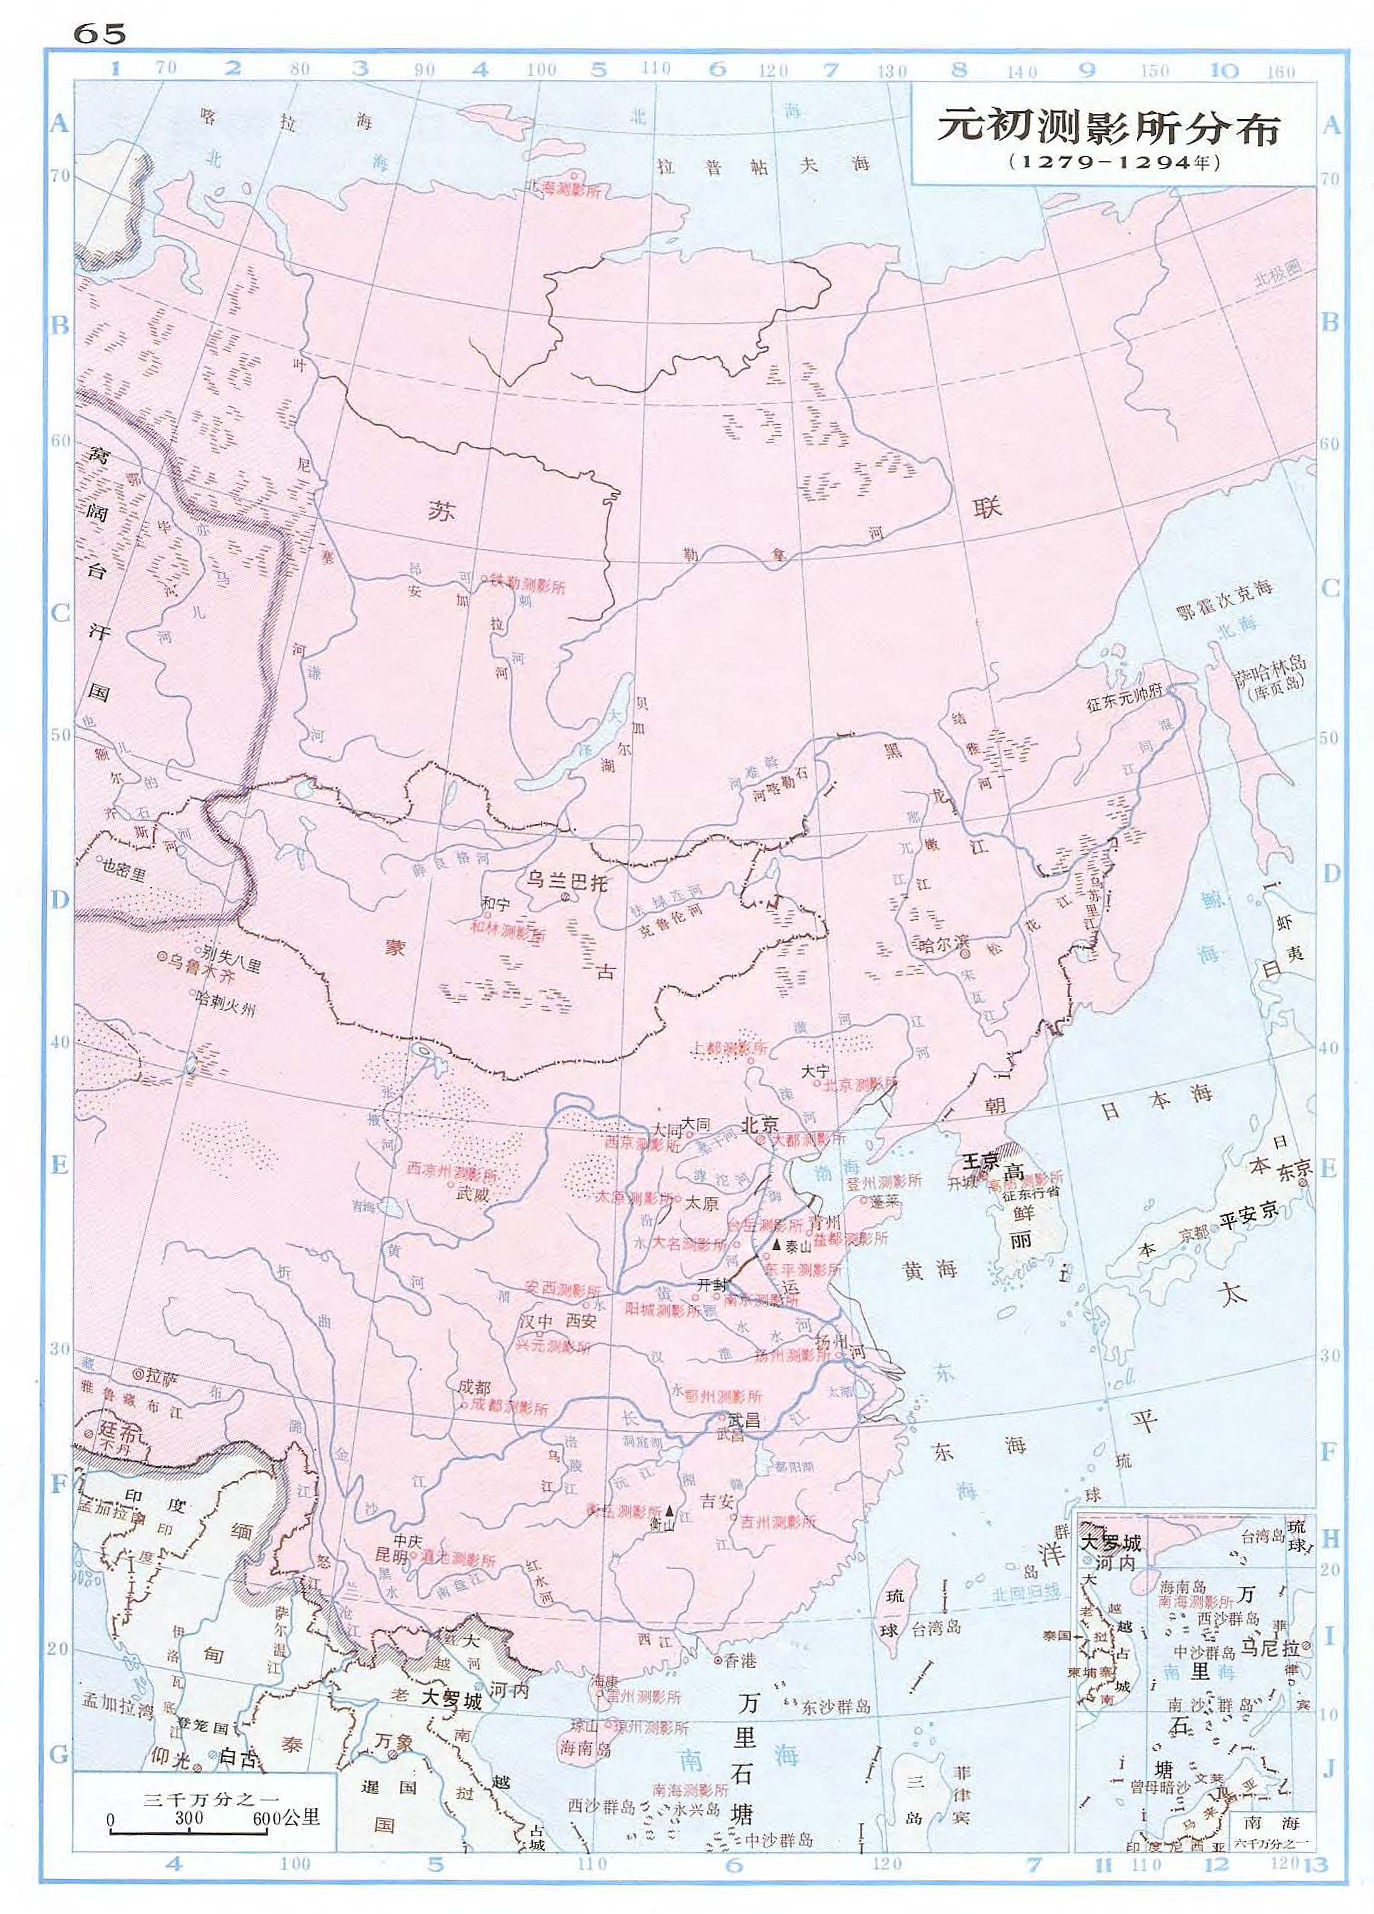 元朝领土到底有多大？最北真的到北冰洋了吗？